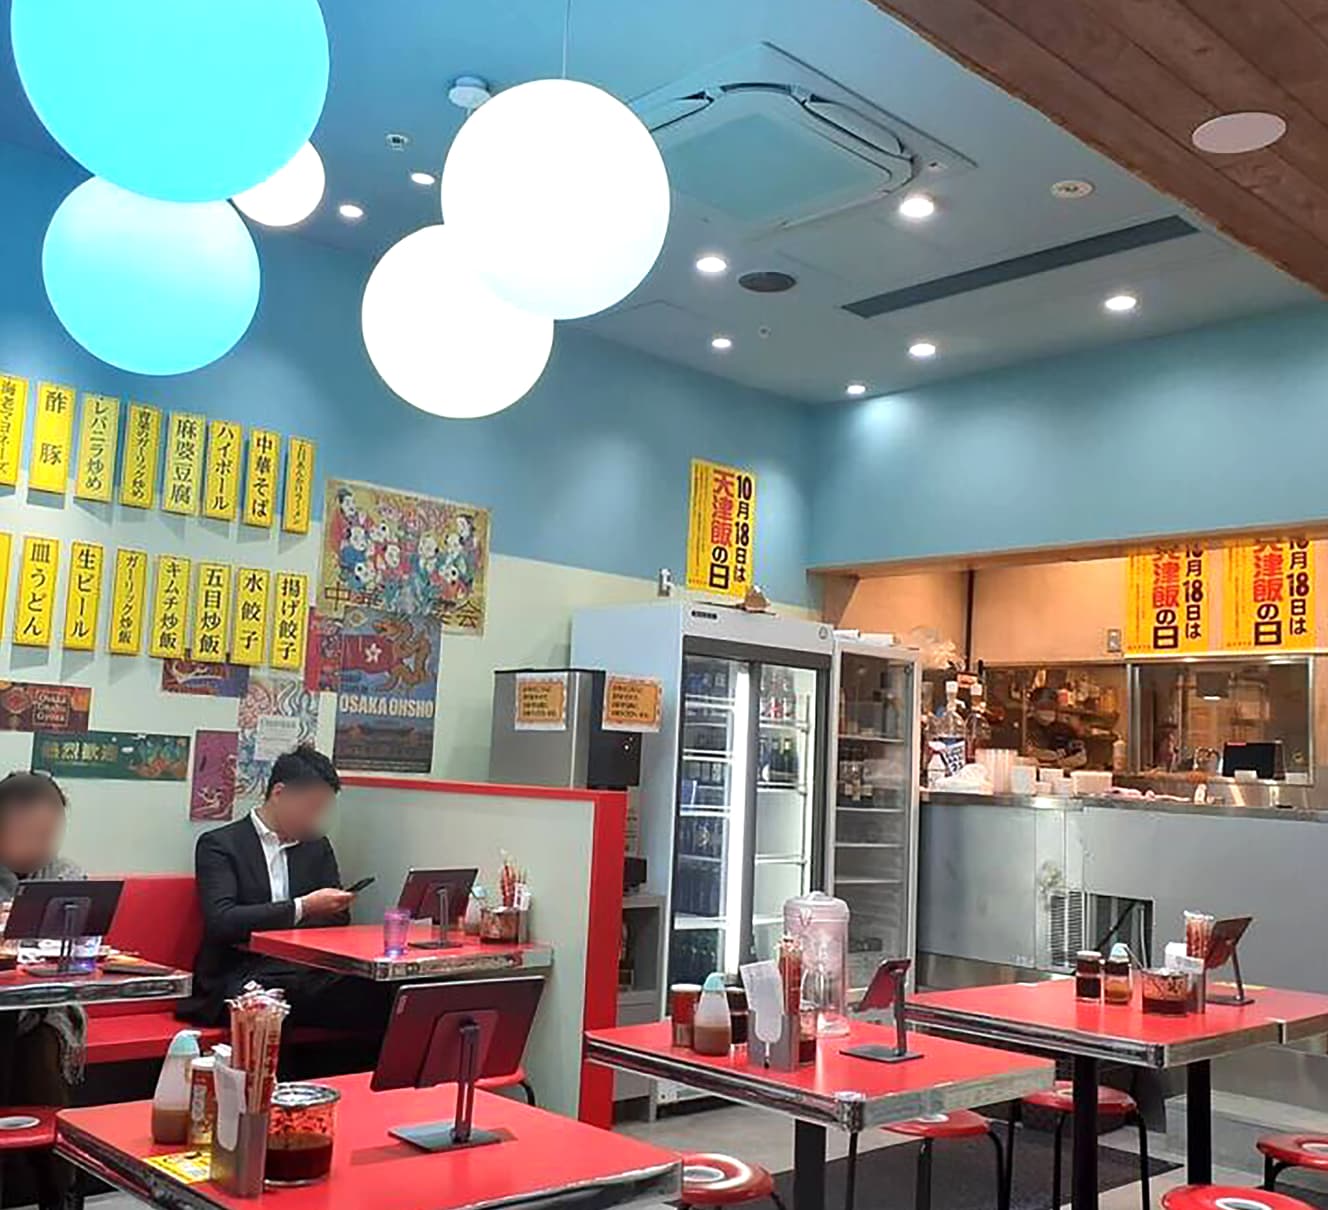 台湾料理店のような内装の大阪王将の店舗。餃子の王将と同じように、店ごとの裁量が大きく、個性が出る